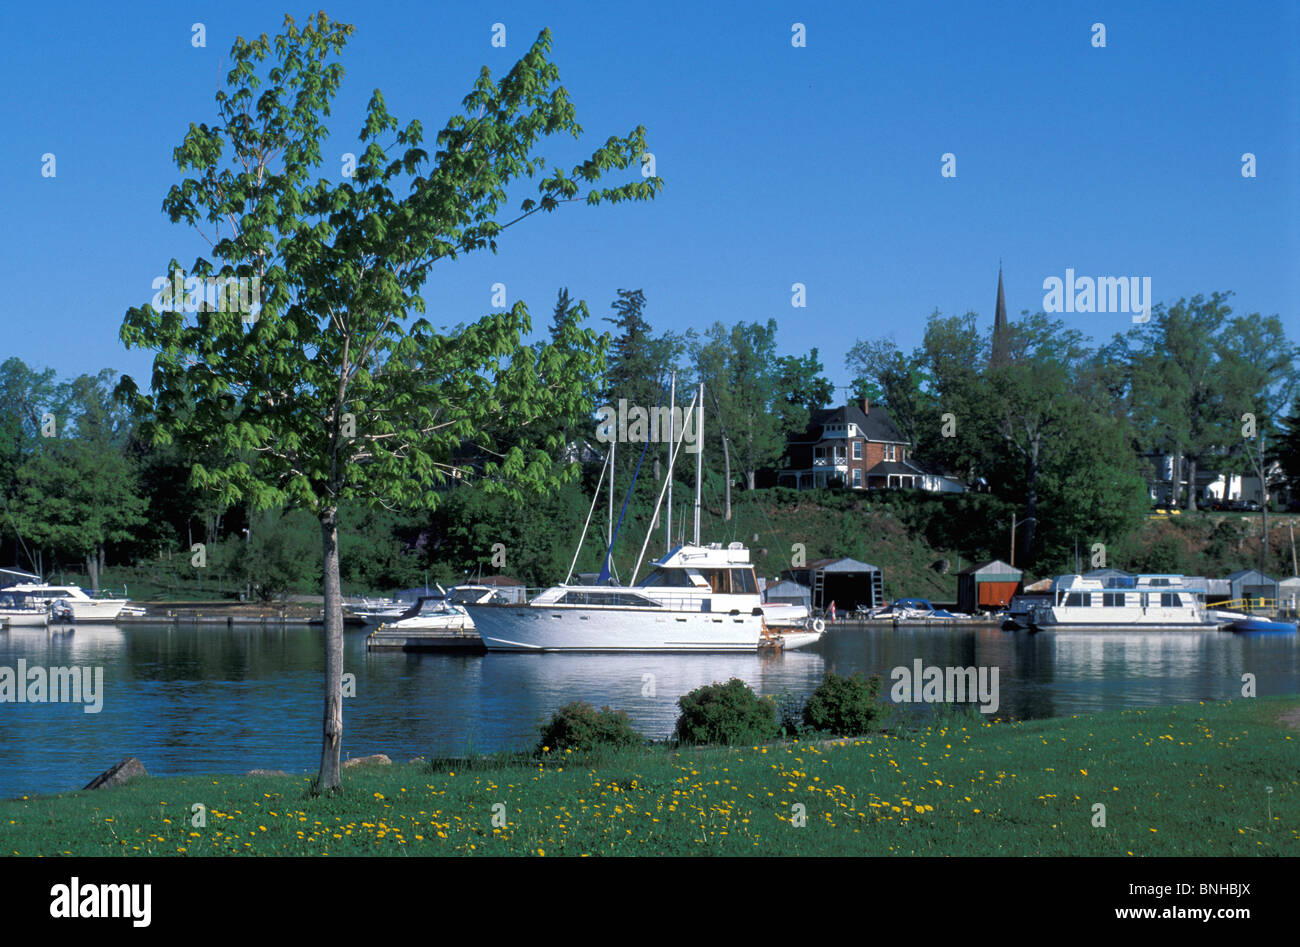 Kanada Gananoque Ontario Hafen 1000 Inseln Region Hafen Marina Boote Segelboote Ufer Wasser Segeln Nordamerika Stockfoto